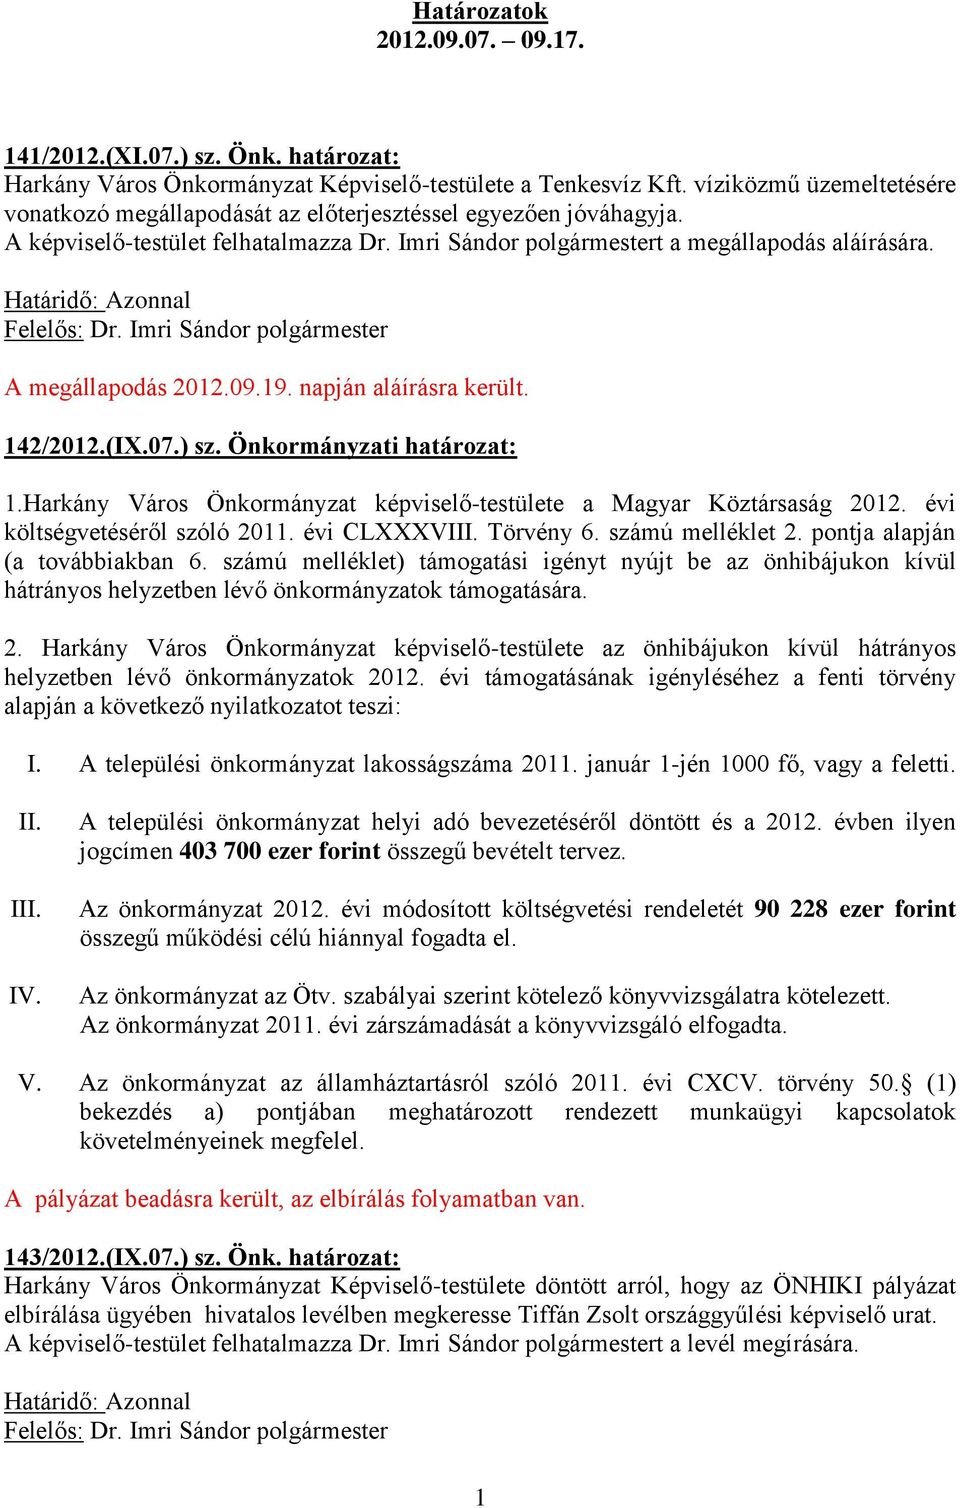 A megállapodás 2012.09.19. napján aláírásra került. 142/2012.(IX.07.) sz. Önkormányzati határozat: 1.Harkány Város Önkormányzat képviselő-testülete a Magyar Köztársaság 2012.